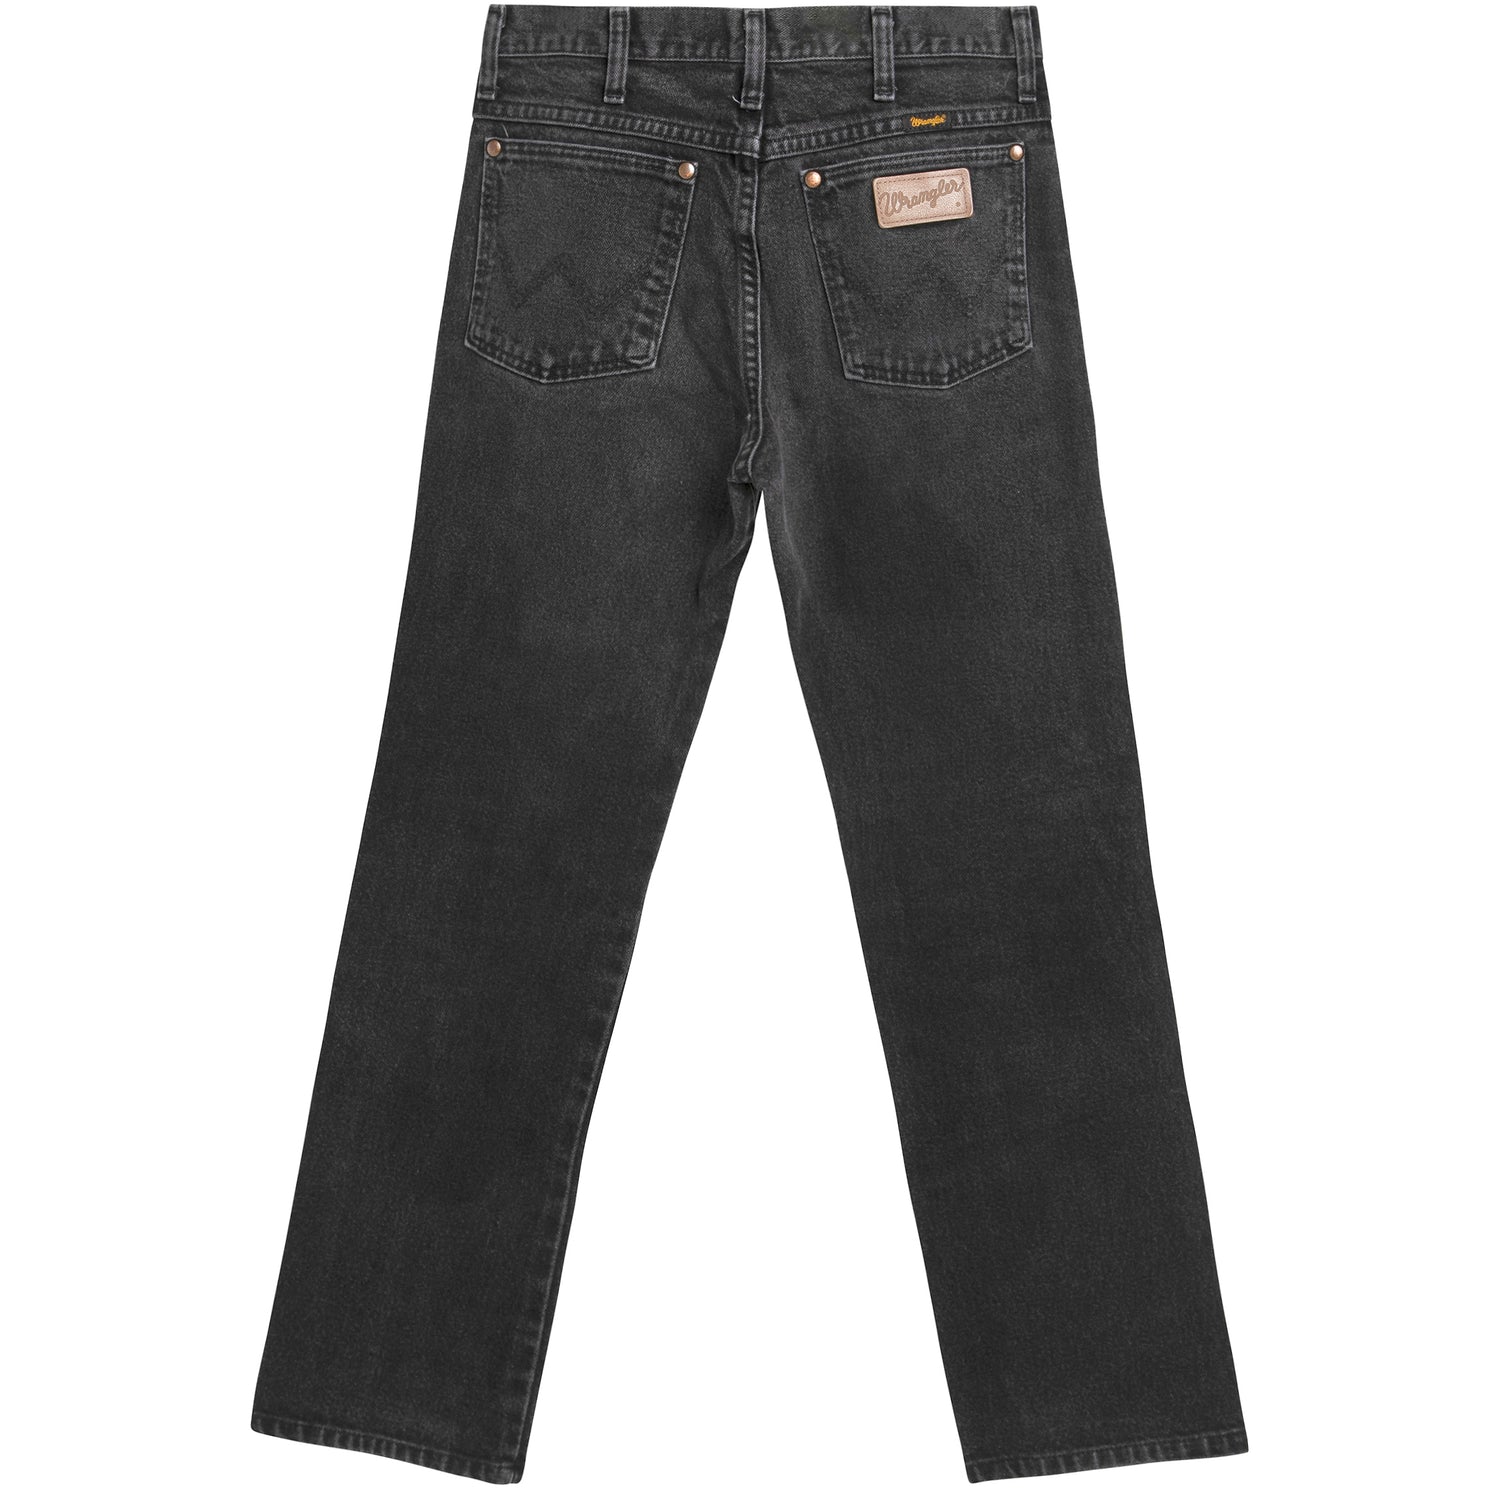 Vintage 90s faded black WRANGLER denim jeans 🖤🖤 - Depop